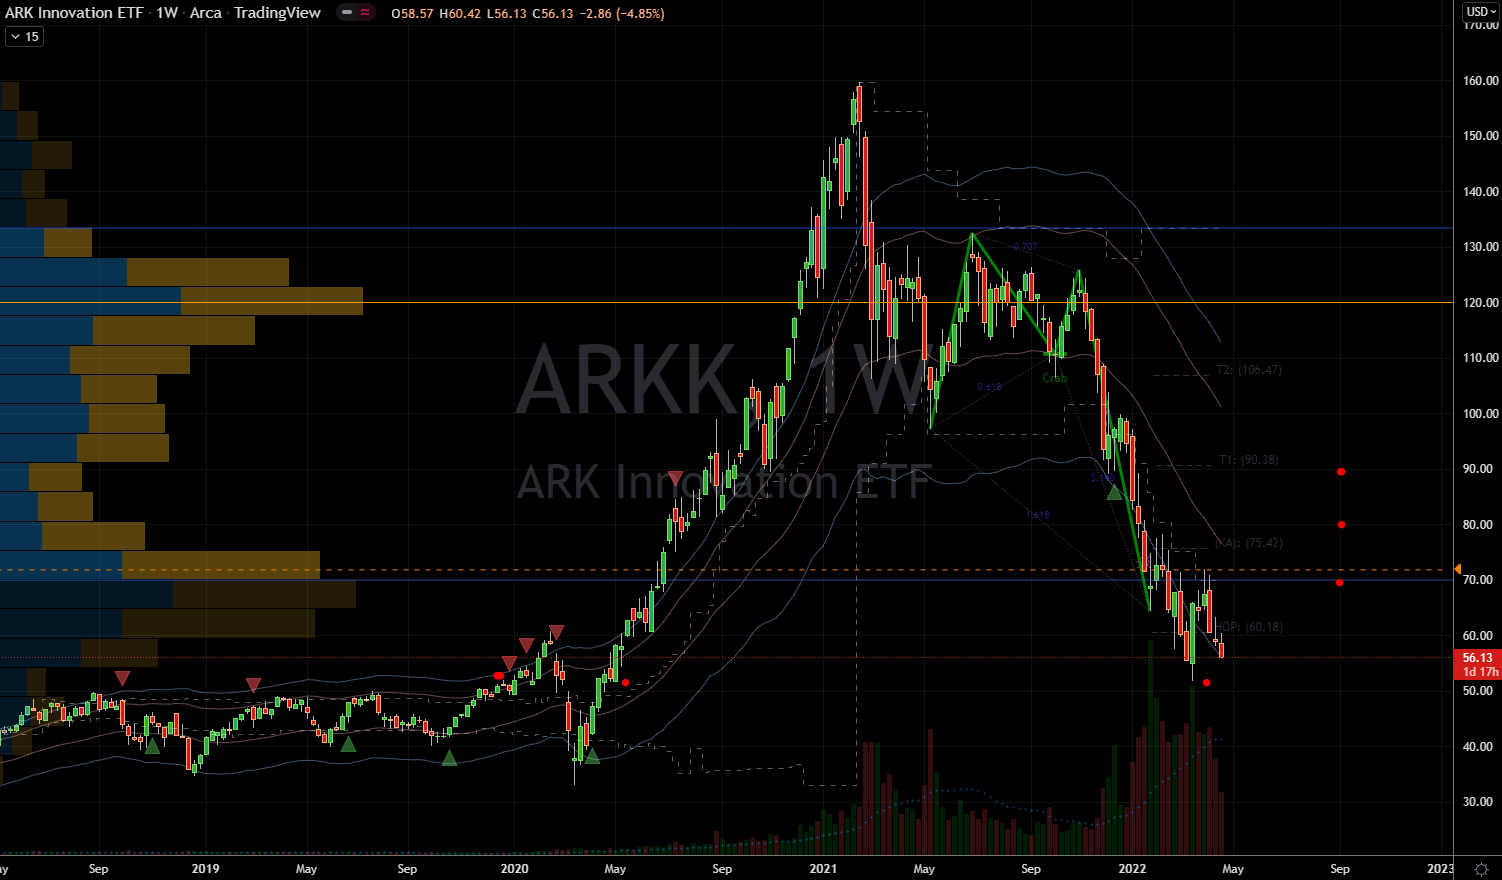 ARK Innovation ETF (ARKK) Stock Chart Showing Upside Potential